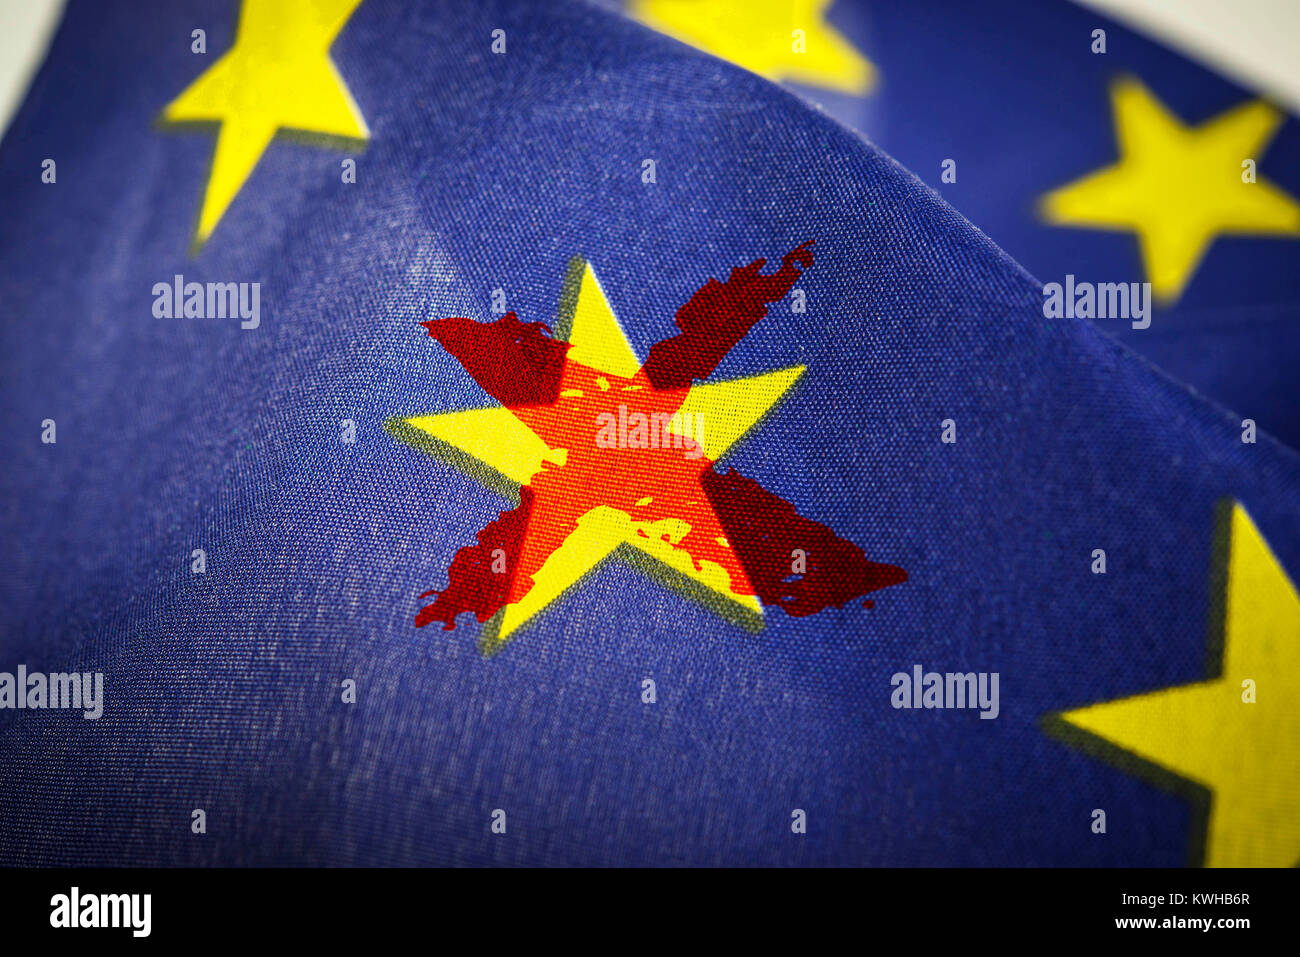 Barrata stella sulla bandiera UE, simbolico Grexit foto, Durchgestrichener Stern auf der EU-Fahne, Symbolfoto Grexit Foto Stock